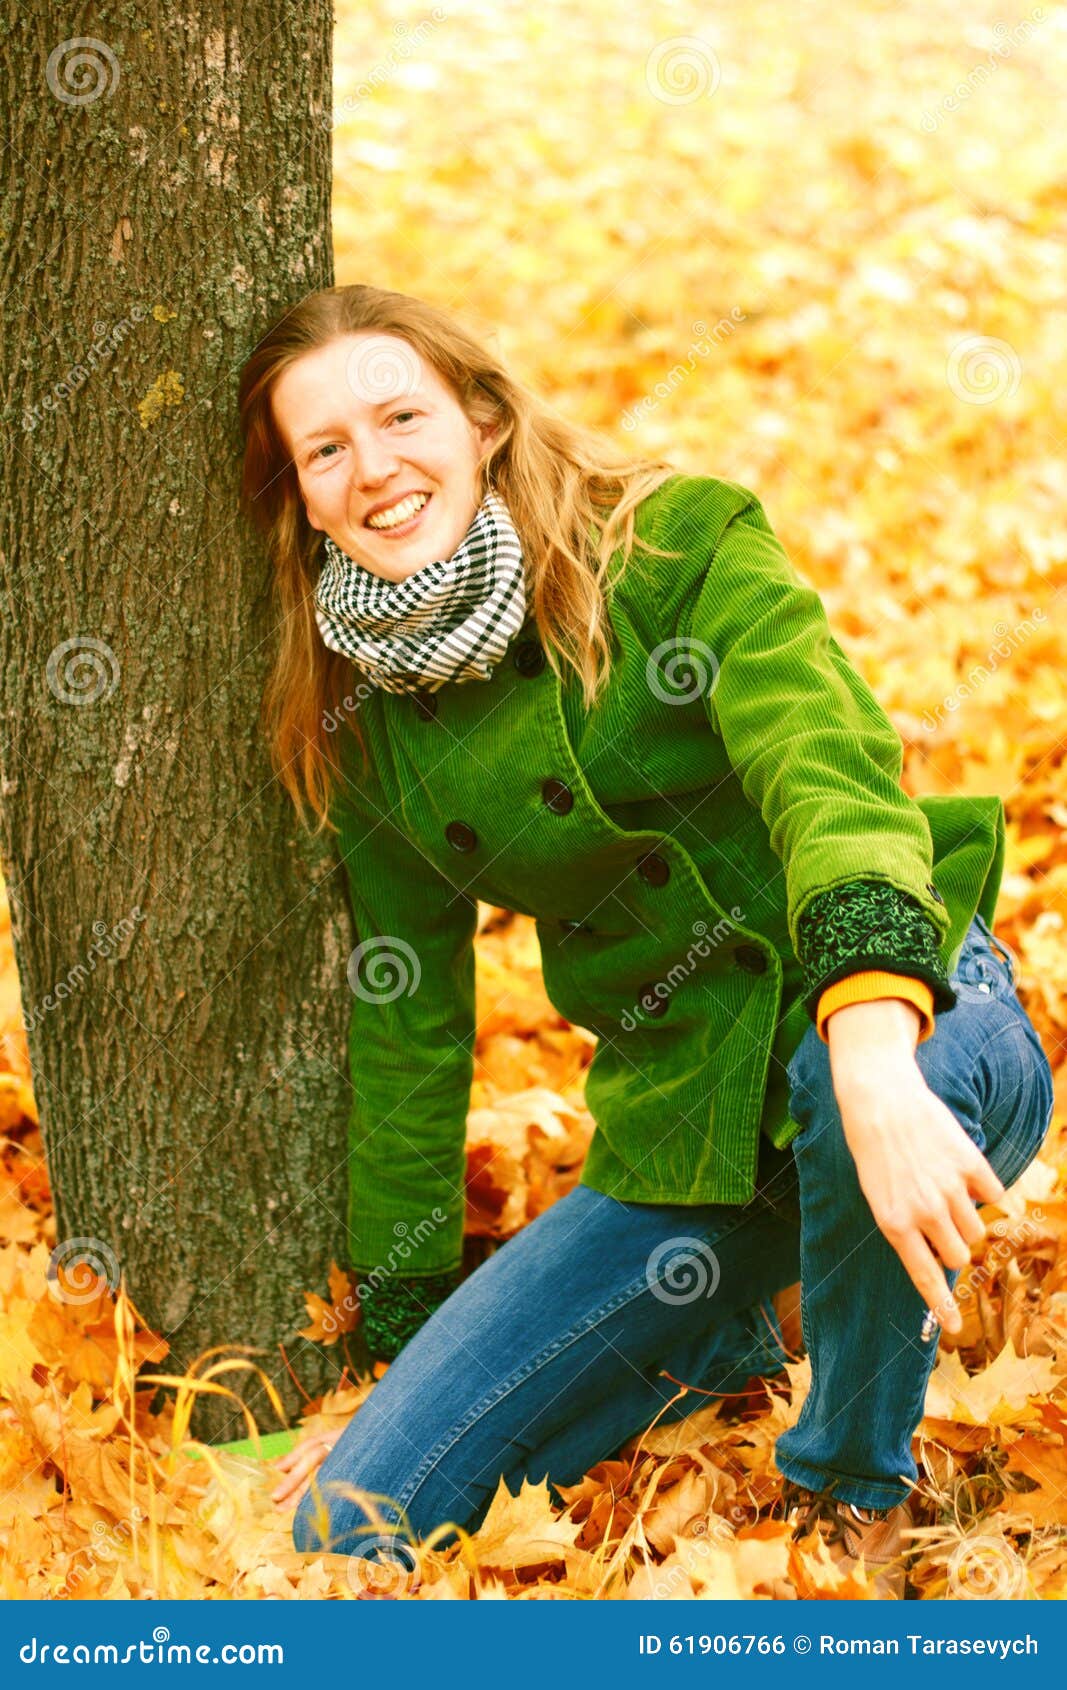 Girl near autumn tree stock photo. Image of autumn, beauty - 61906766